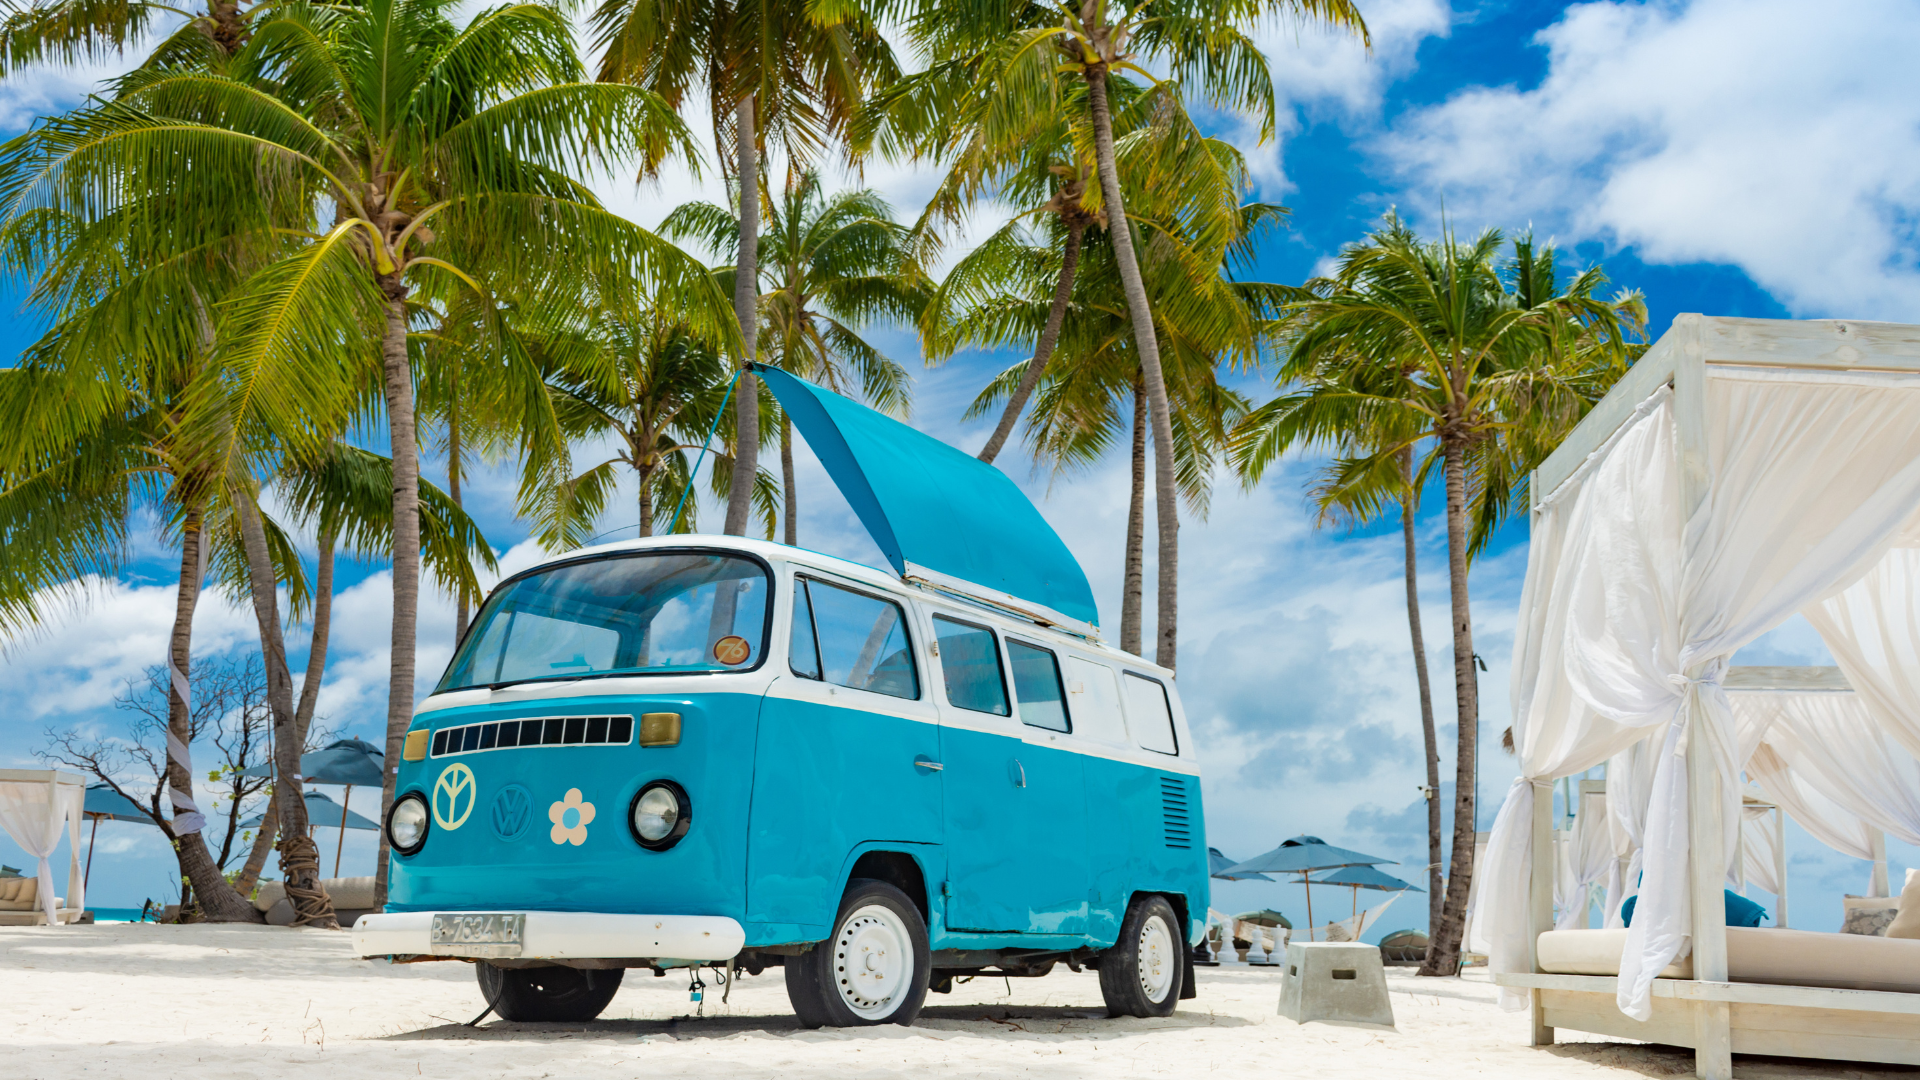 Blue Volkswagen camper van on beach